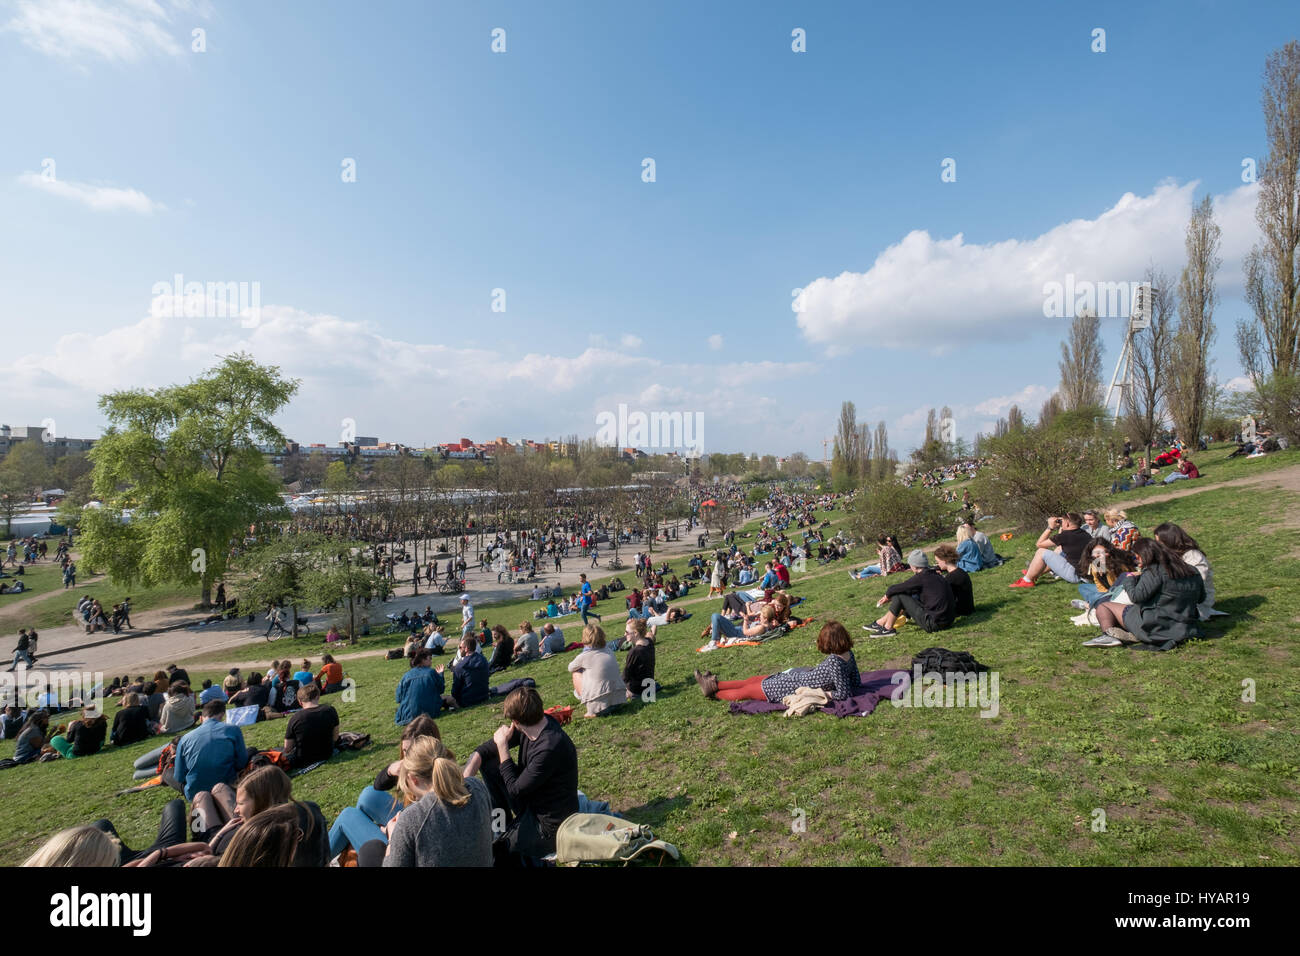 Berlino, Germania - 02 aprile 2017: persone al parco (Mauerpark) in una giornata di sole a Berlino, Germania. Foto Stock